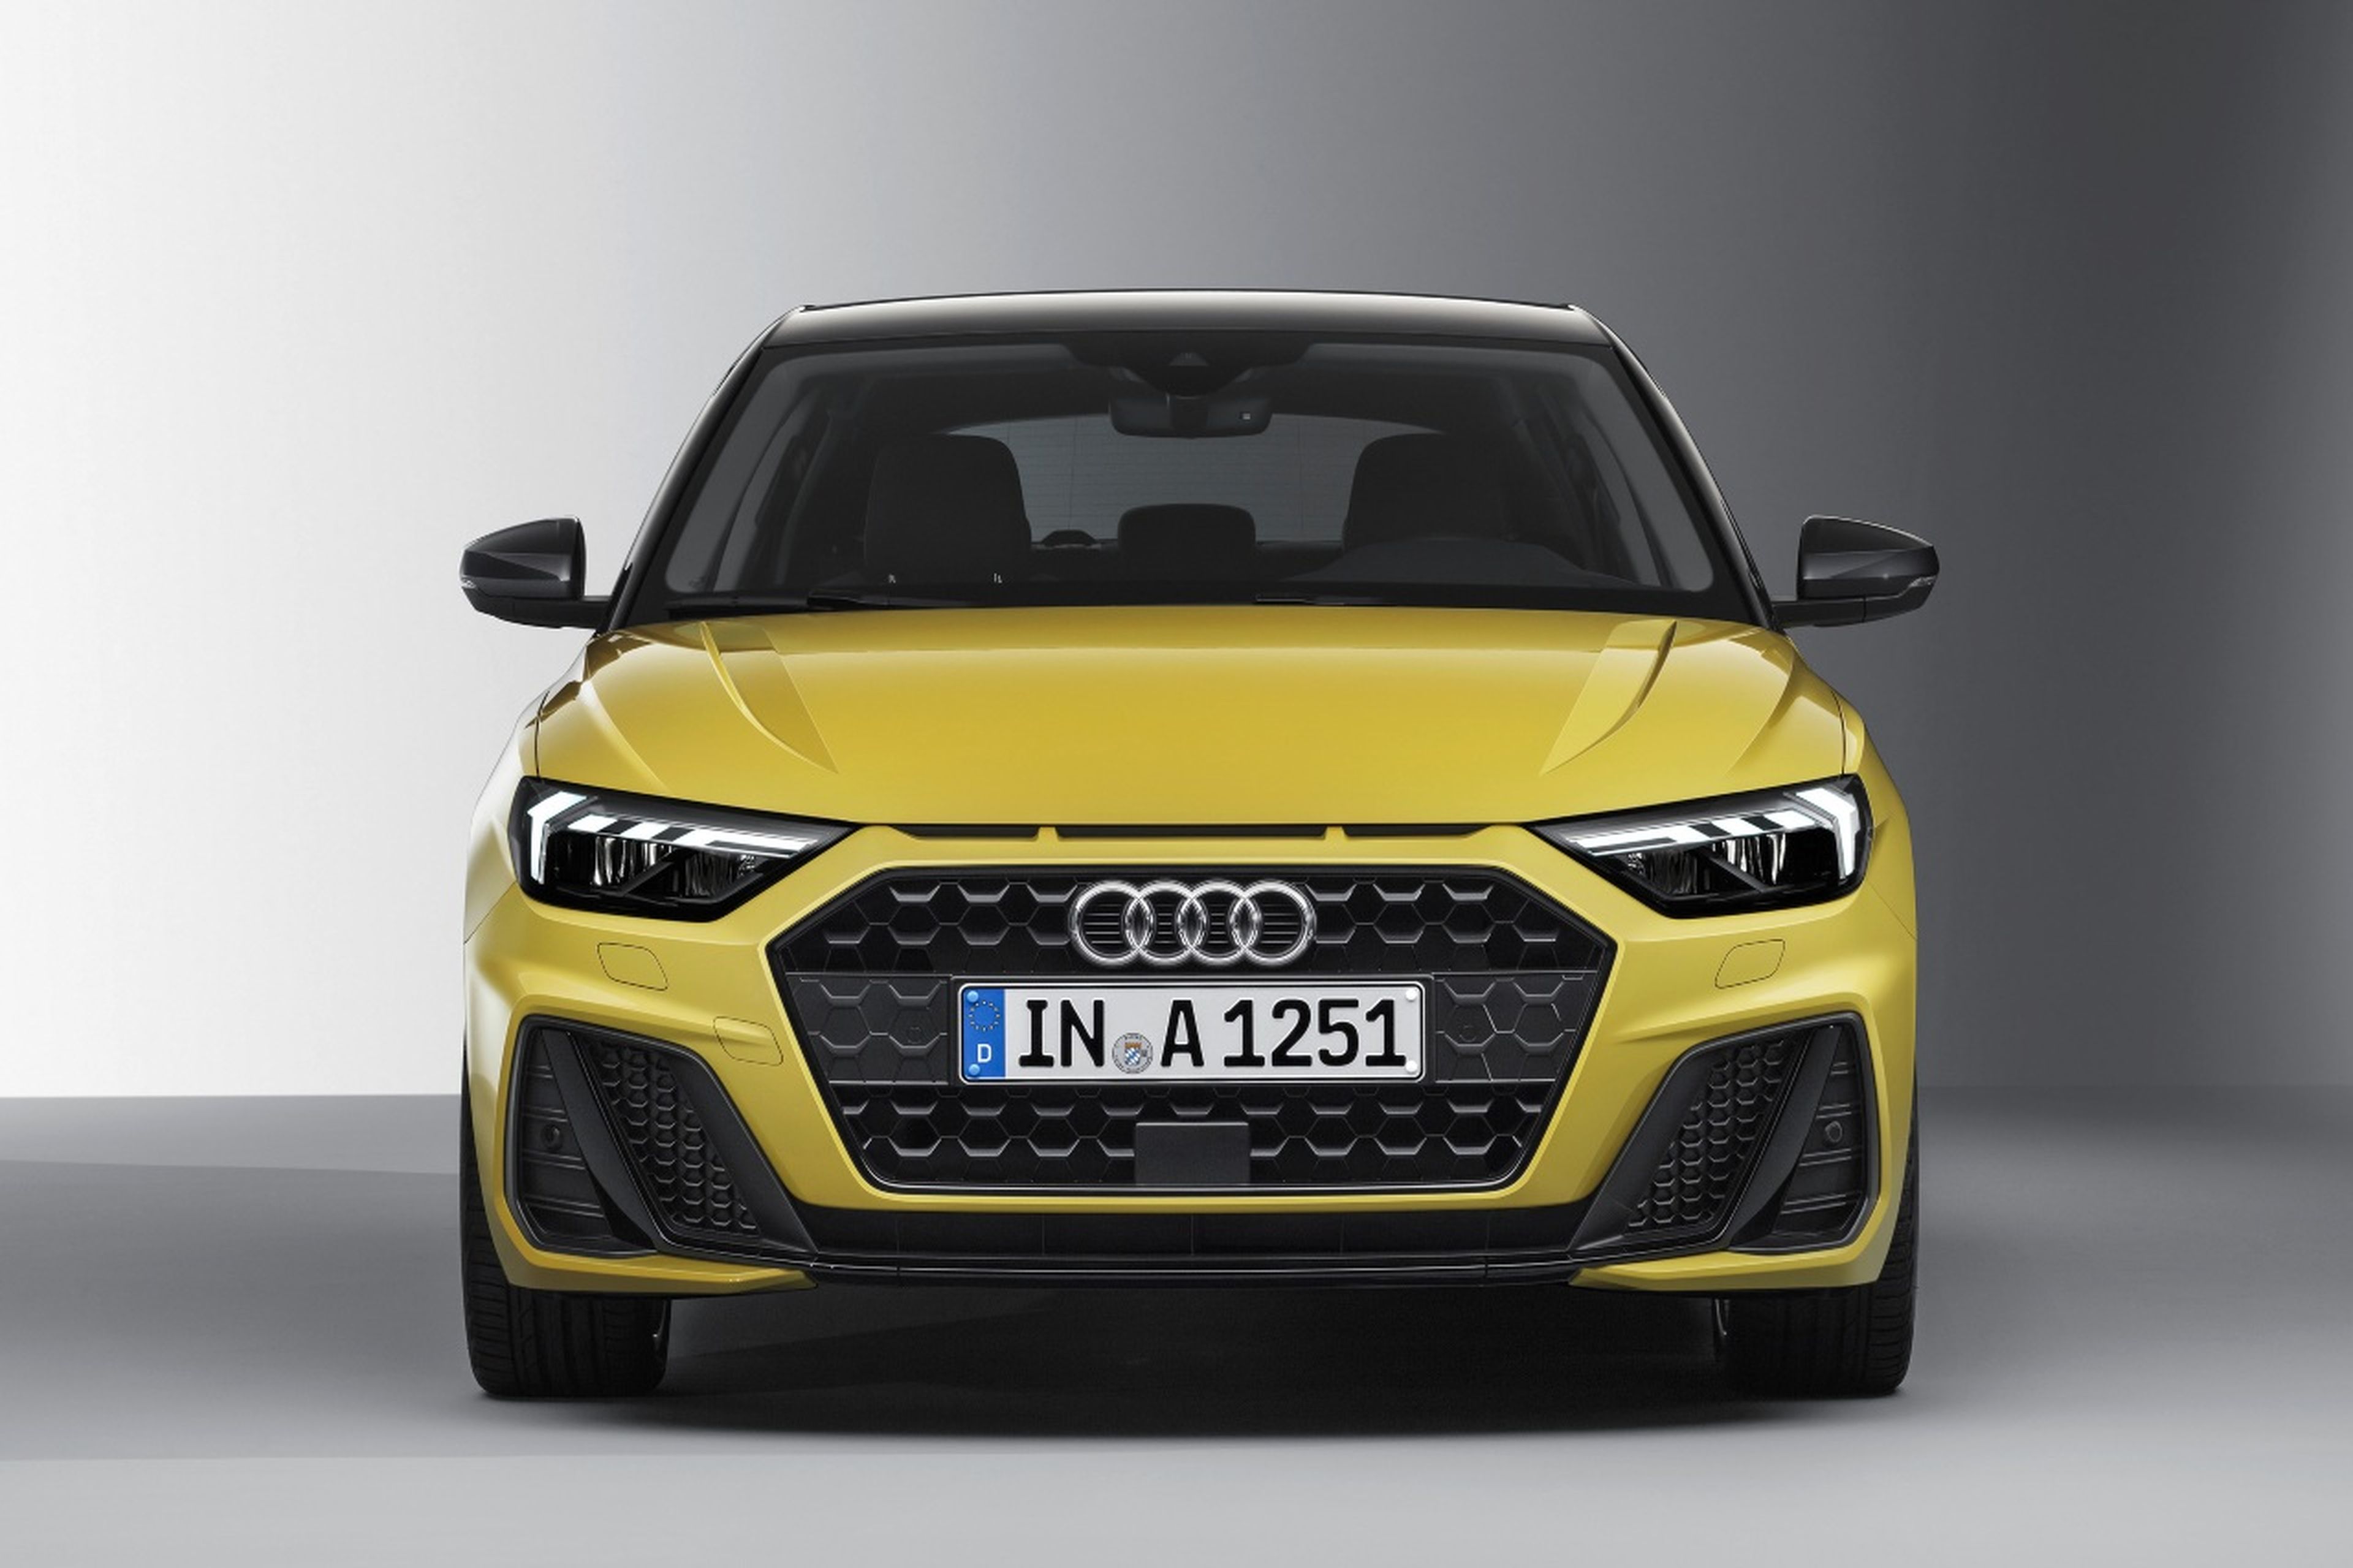 No habrá nueva generación Audi A1 frontal